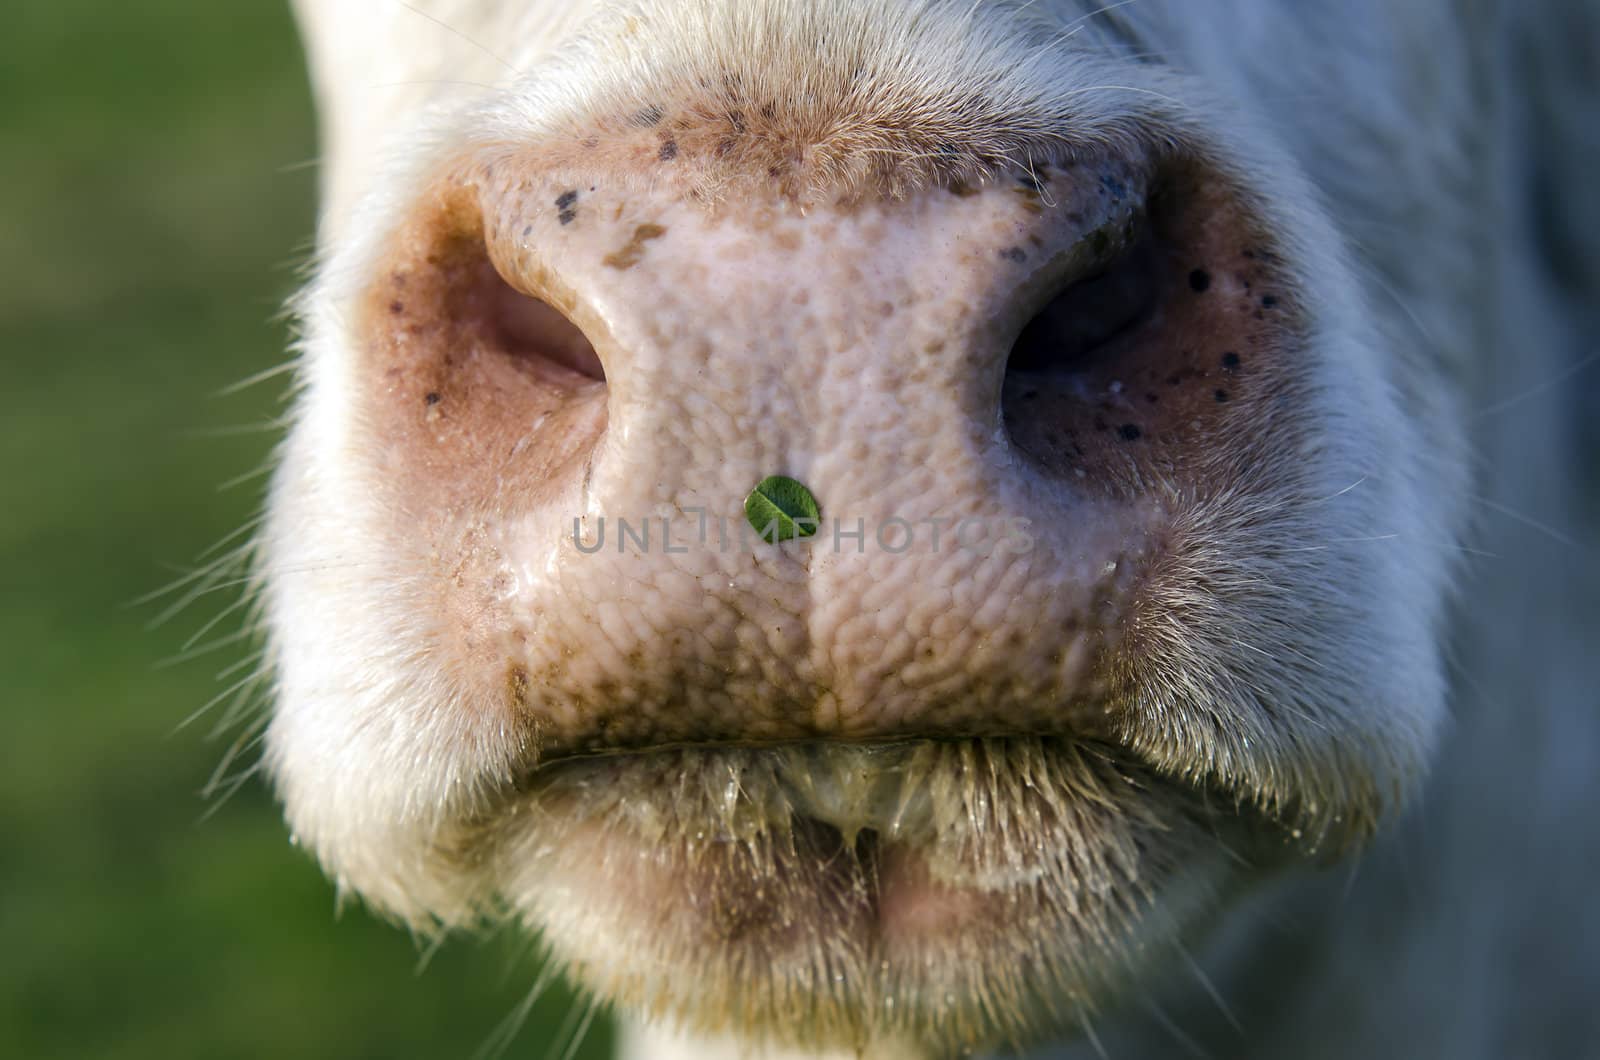 a cow nose close-up